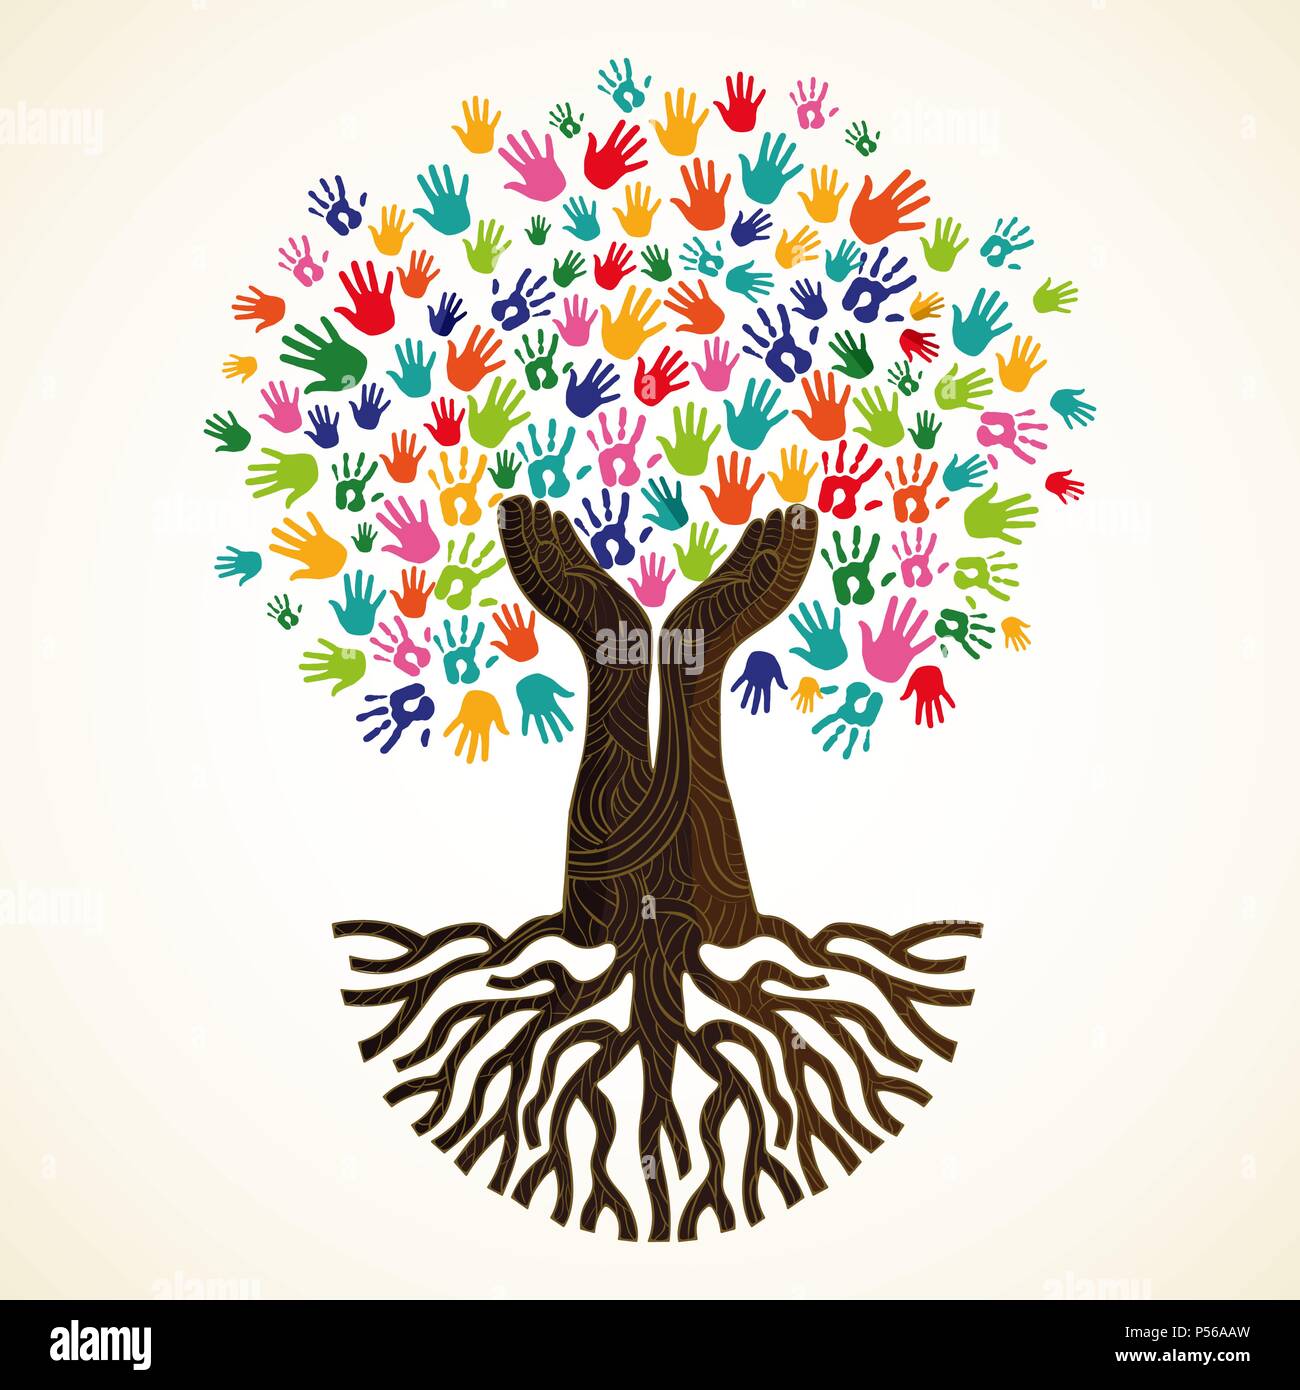 Baum Symbol mit bunten menschlichen Händen. Konzept Abbildung für die Organisation zu helfen, umwelt Projekt oder soziale Arbeit. EPS 10 Vektor. Stock Vektor